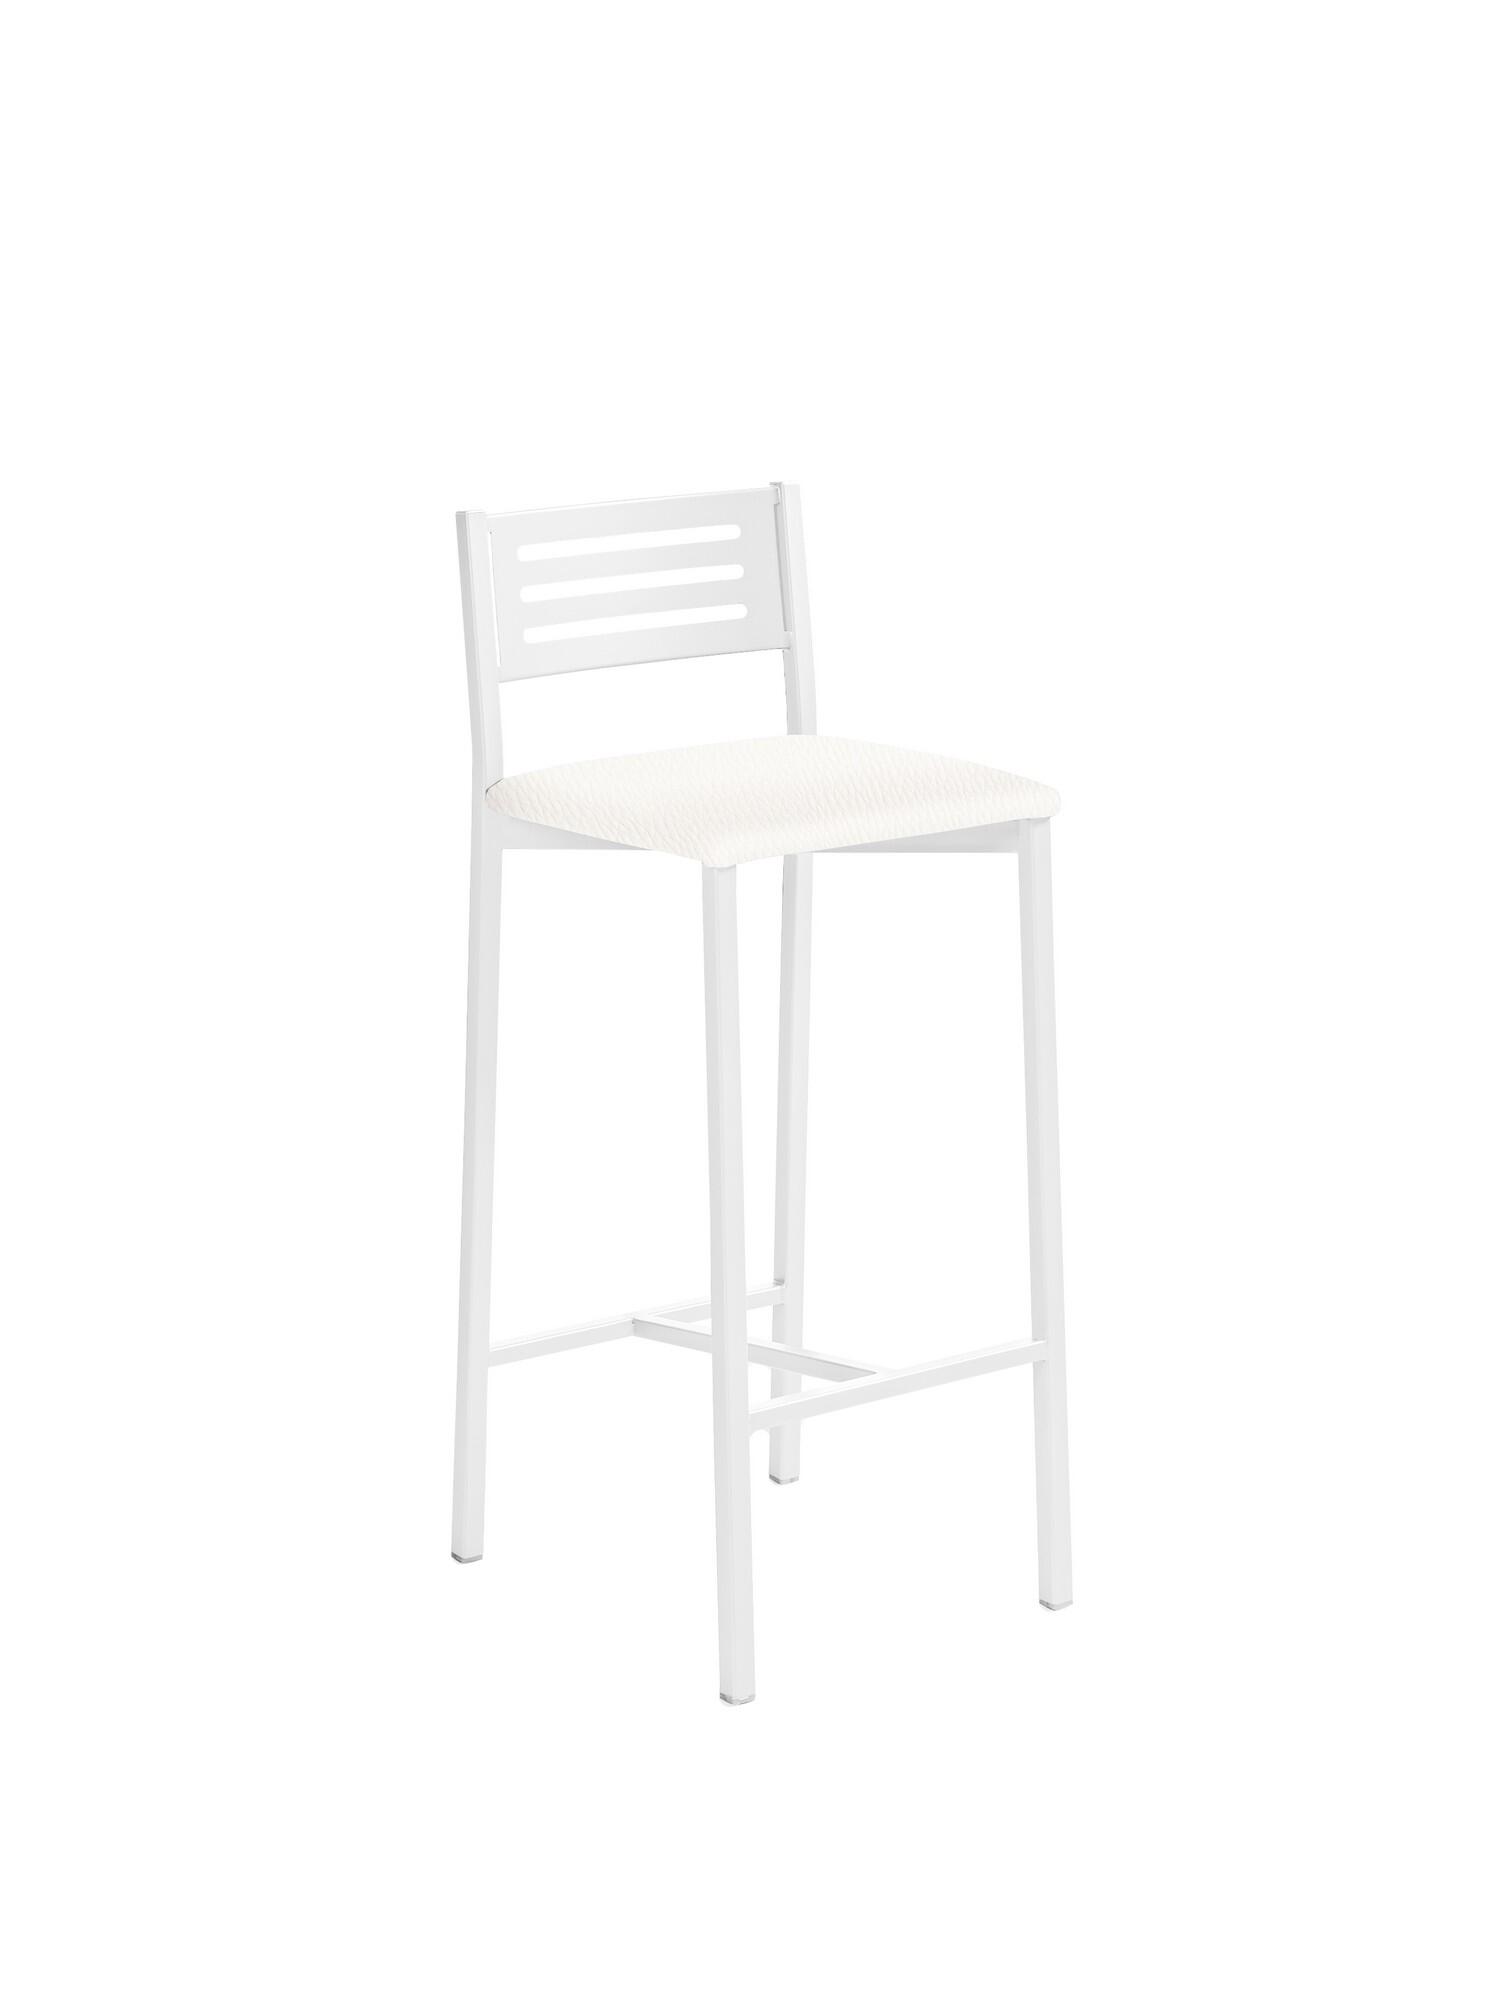 Taburete de estructura color blanco texturizado y asiento blanco de 33 x 66 cm